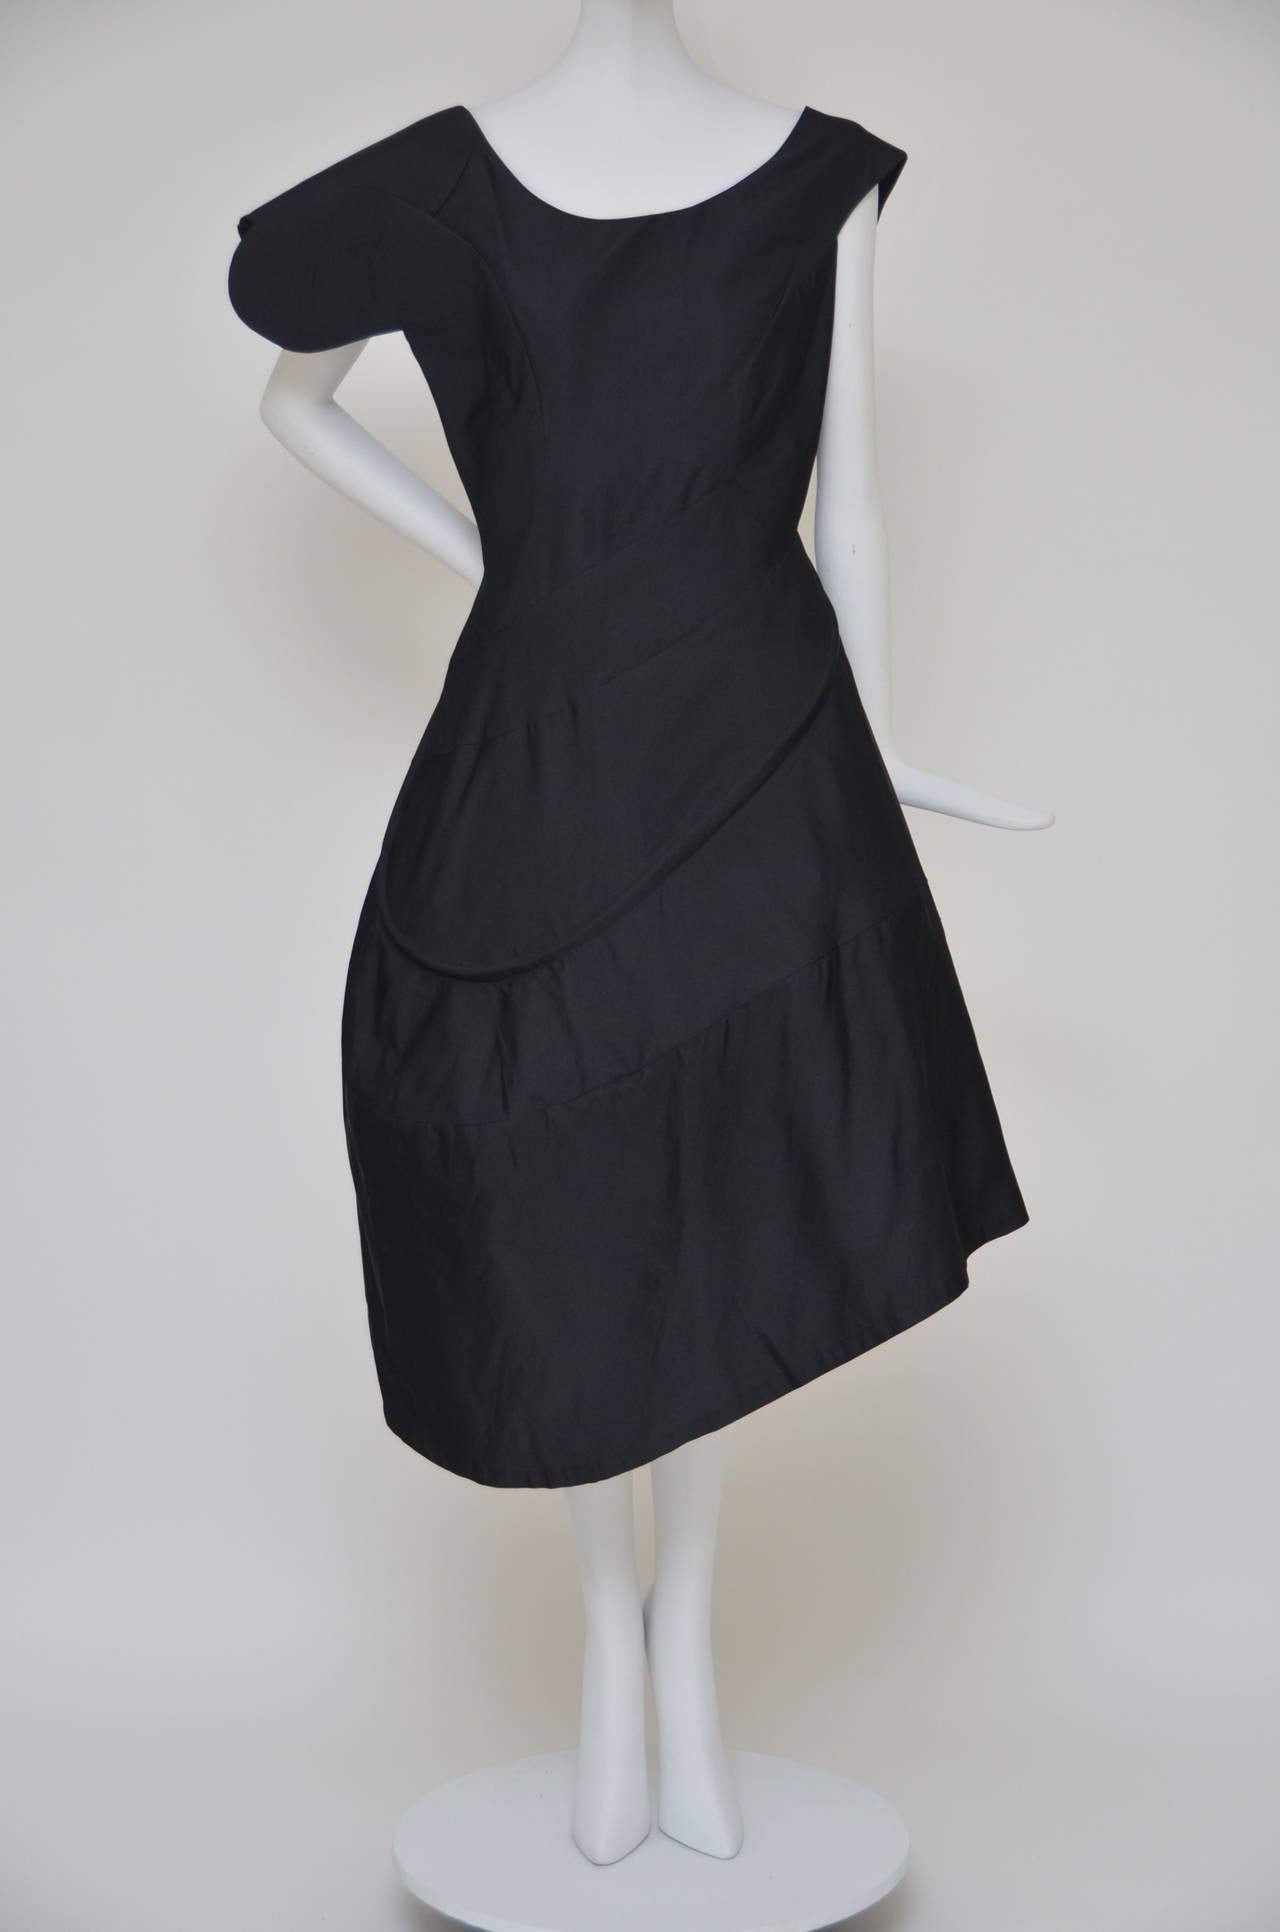 Iconic  YOHJI YAMAMOTO  Black  Silk  Swirl Dress New 1